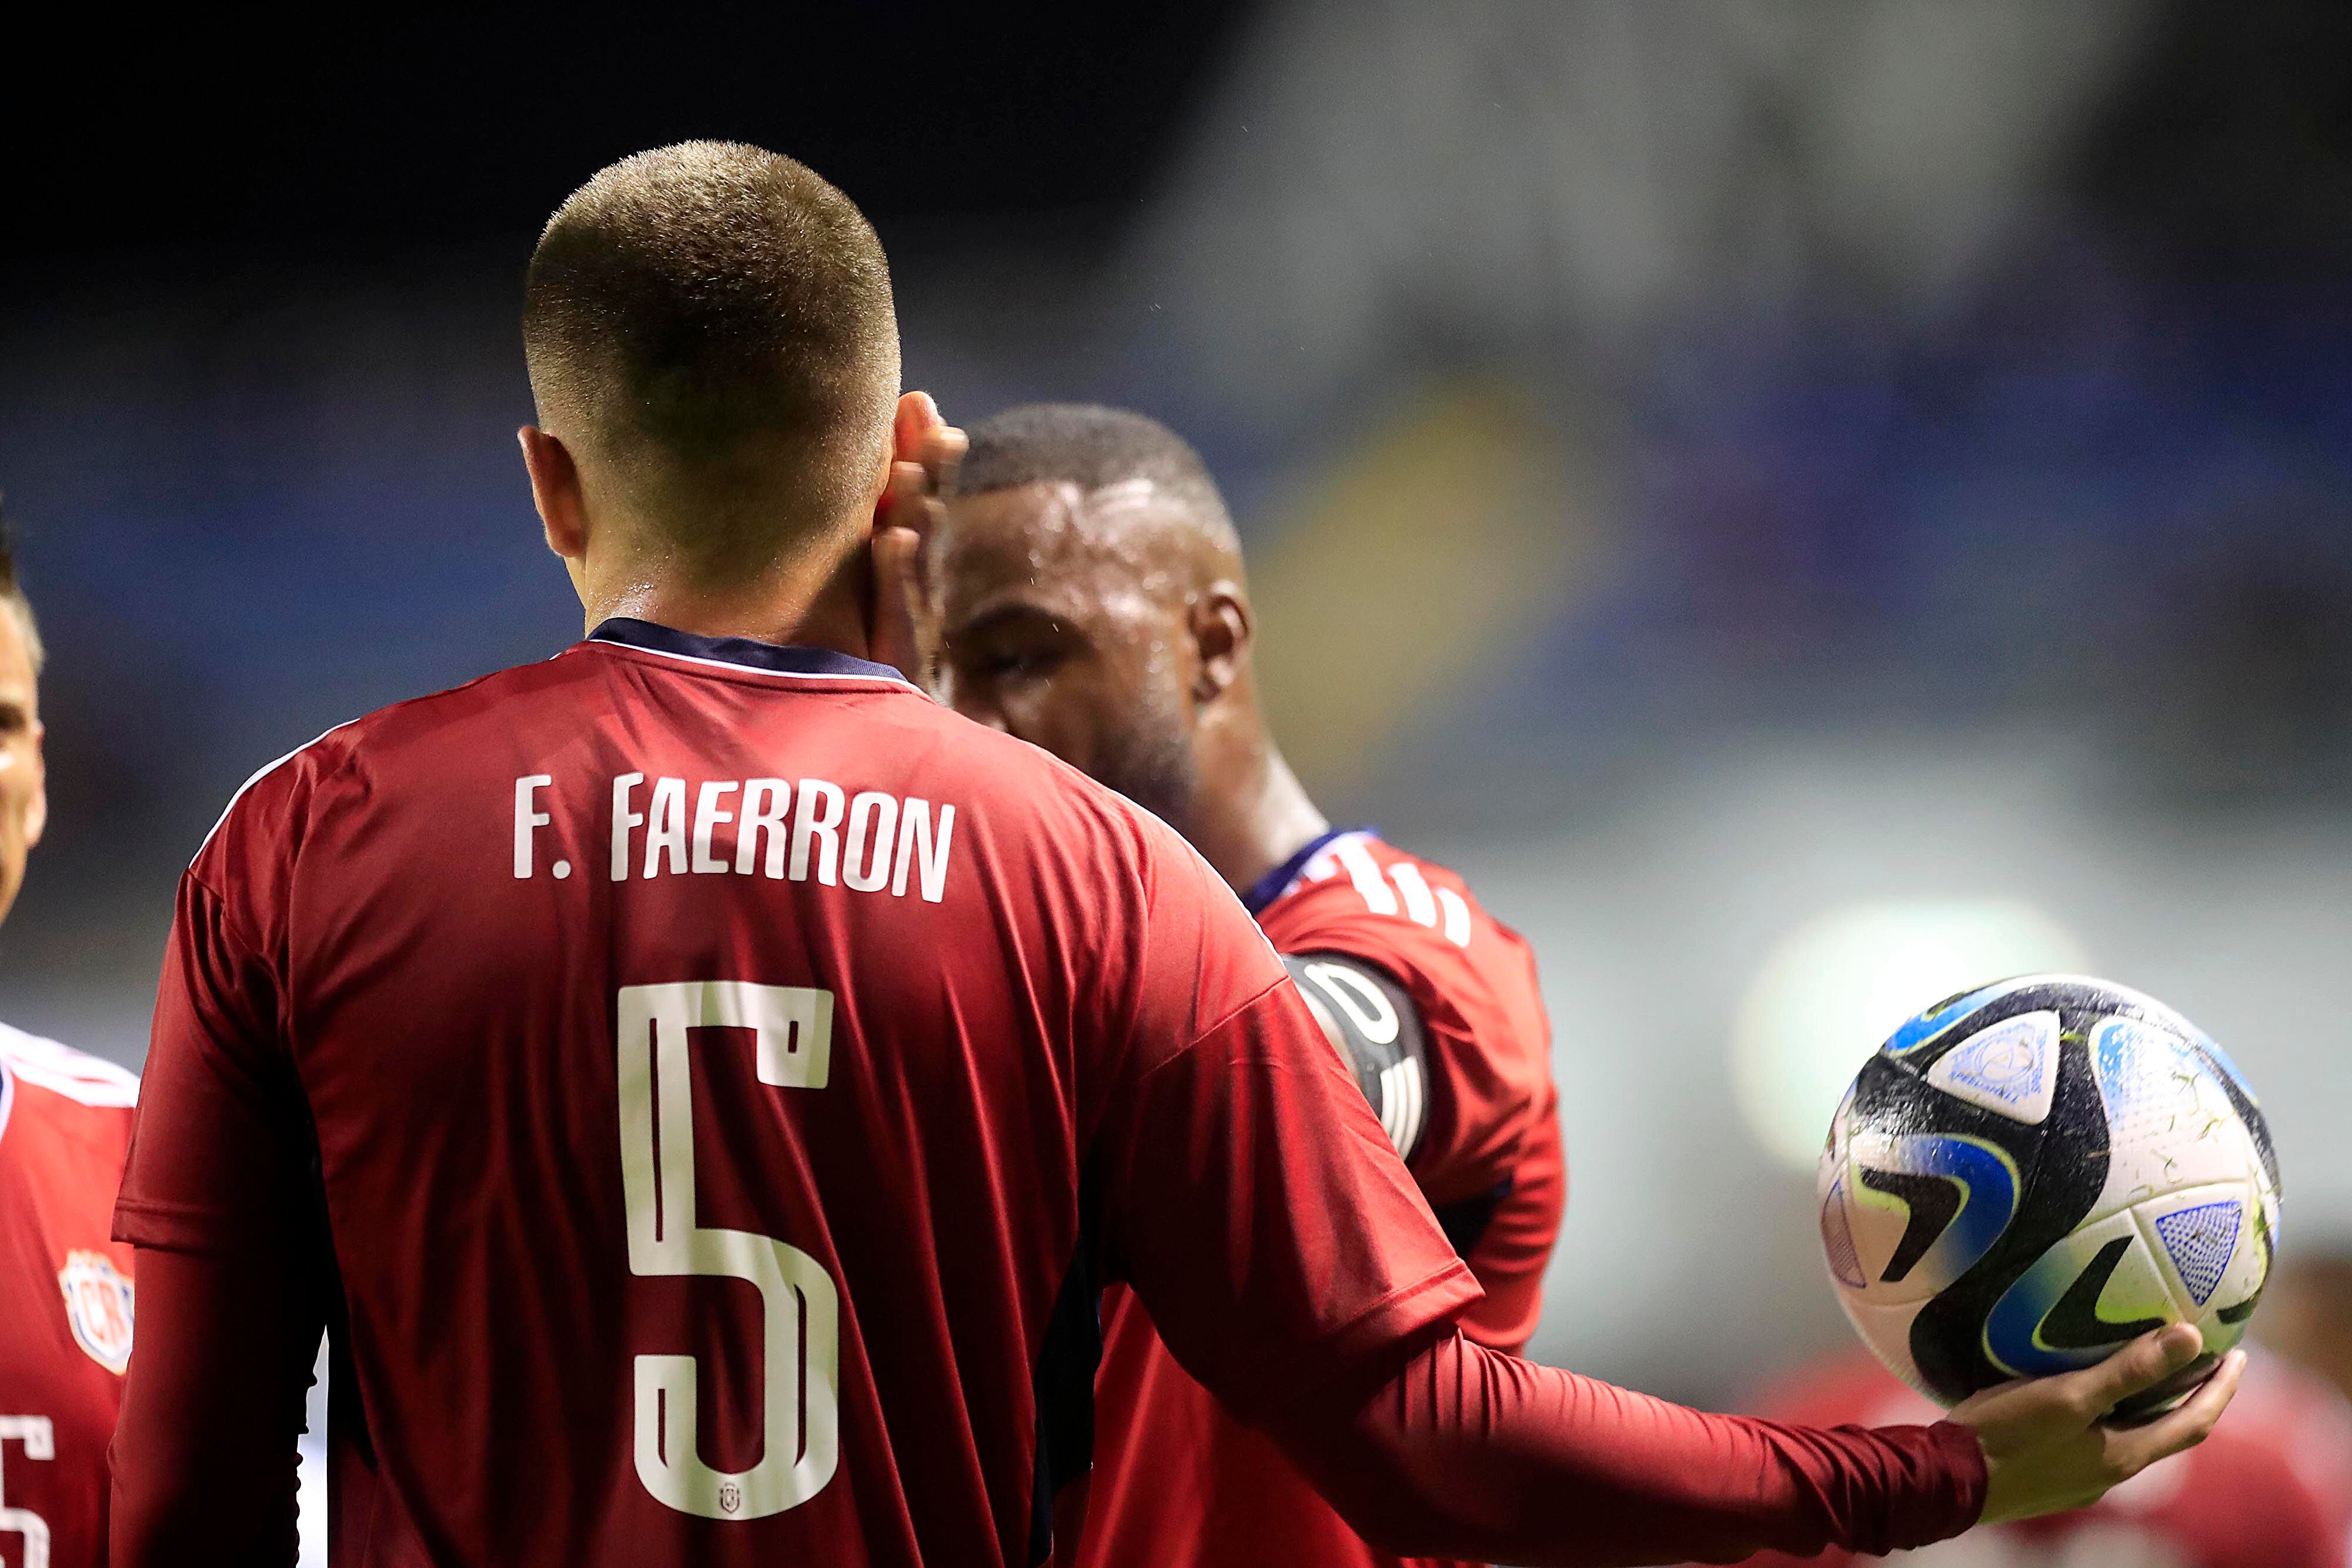 Con sus acciones, Fernán Faerron le da la espalda a la Selección de Costa Rica.